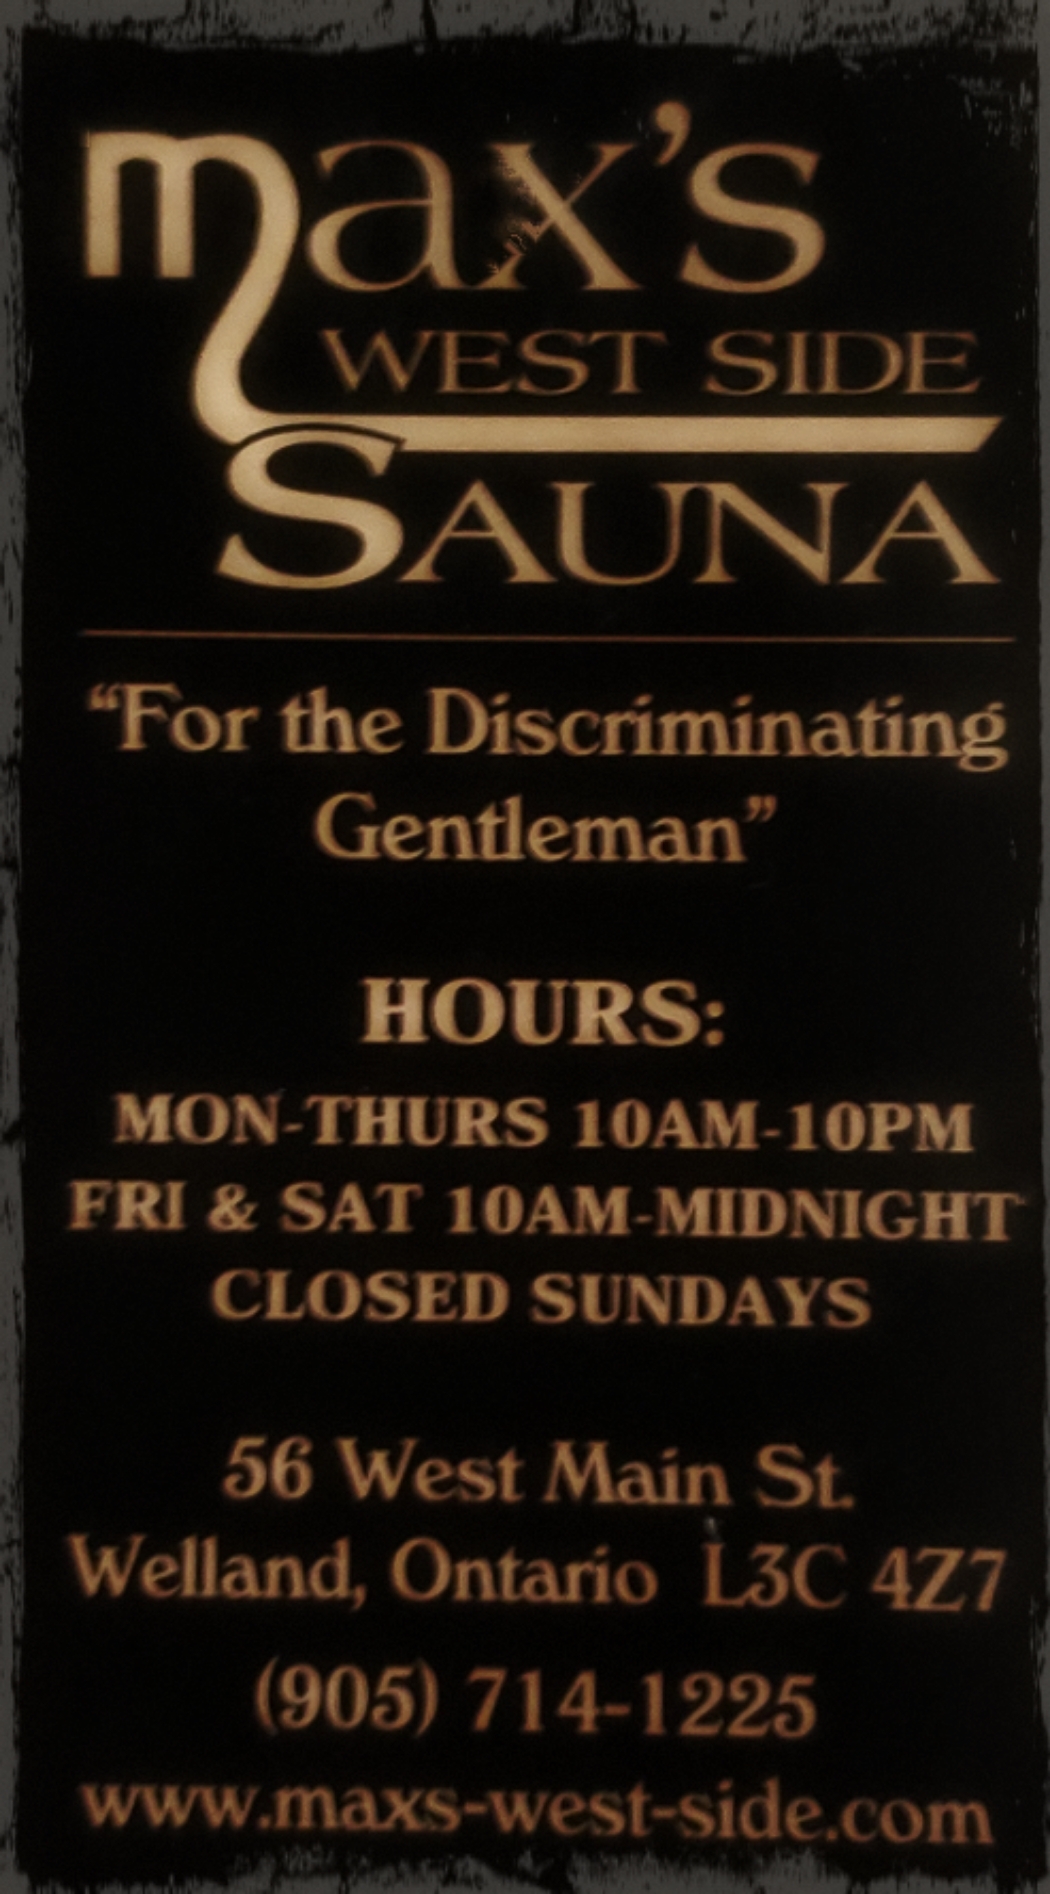 Max's West Side Sauna & Massage